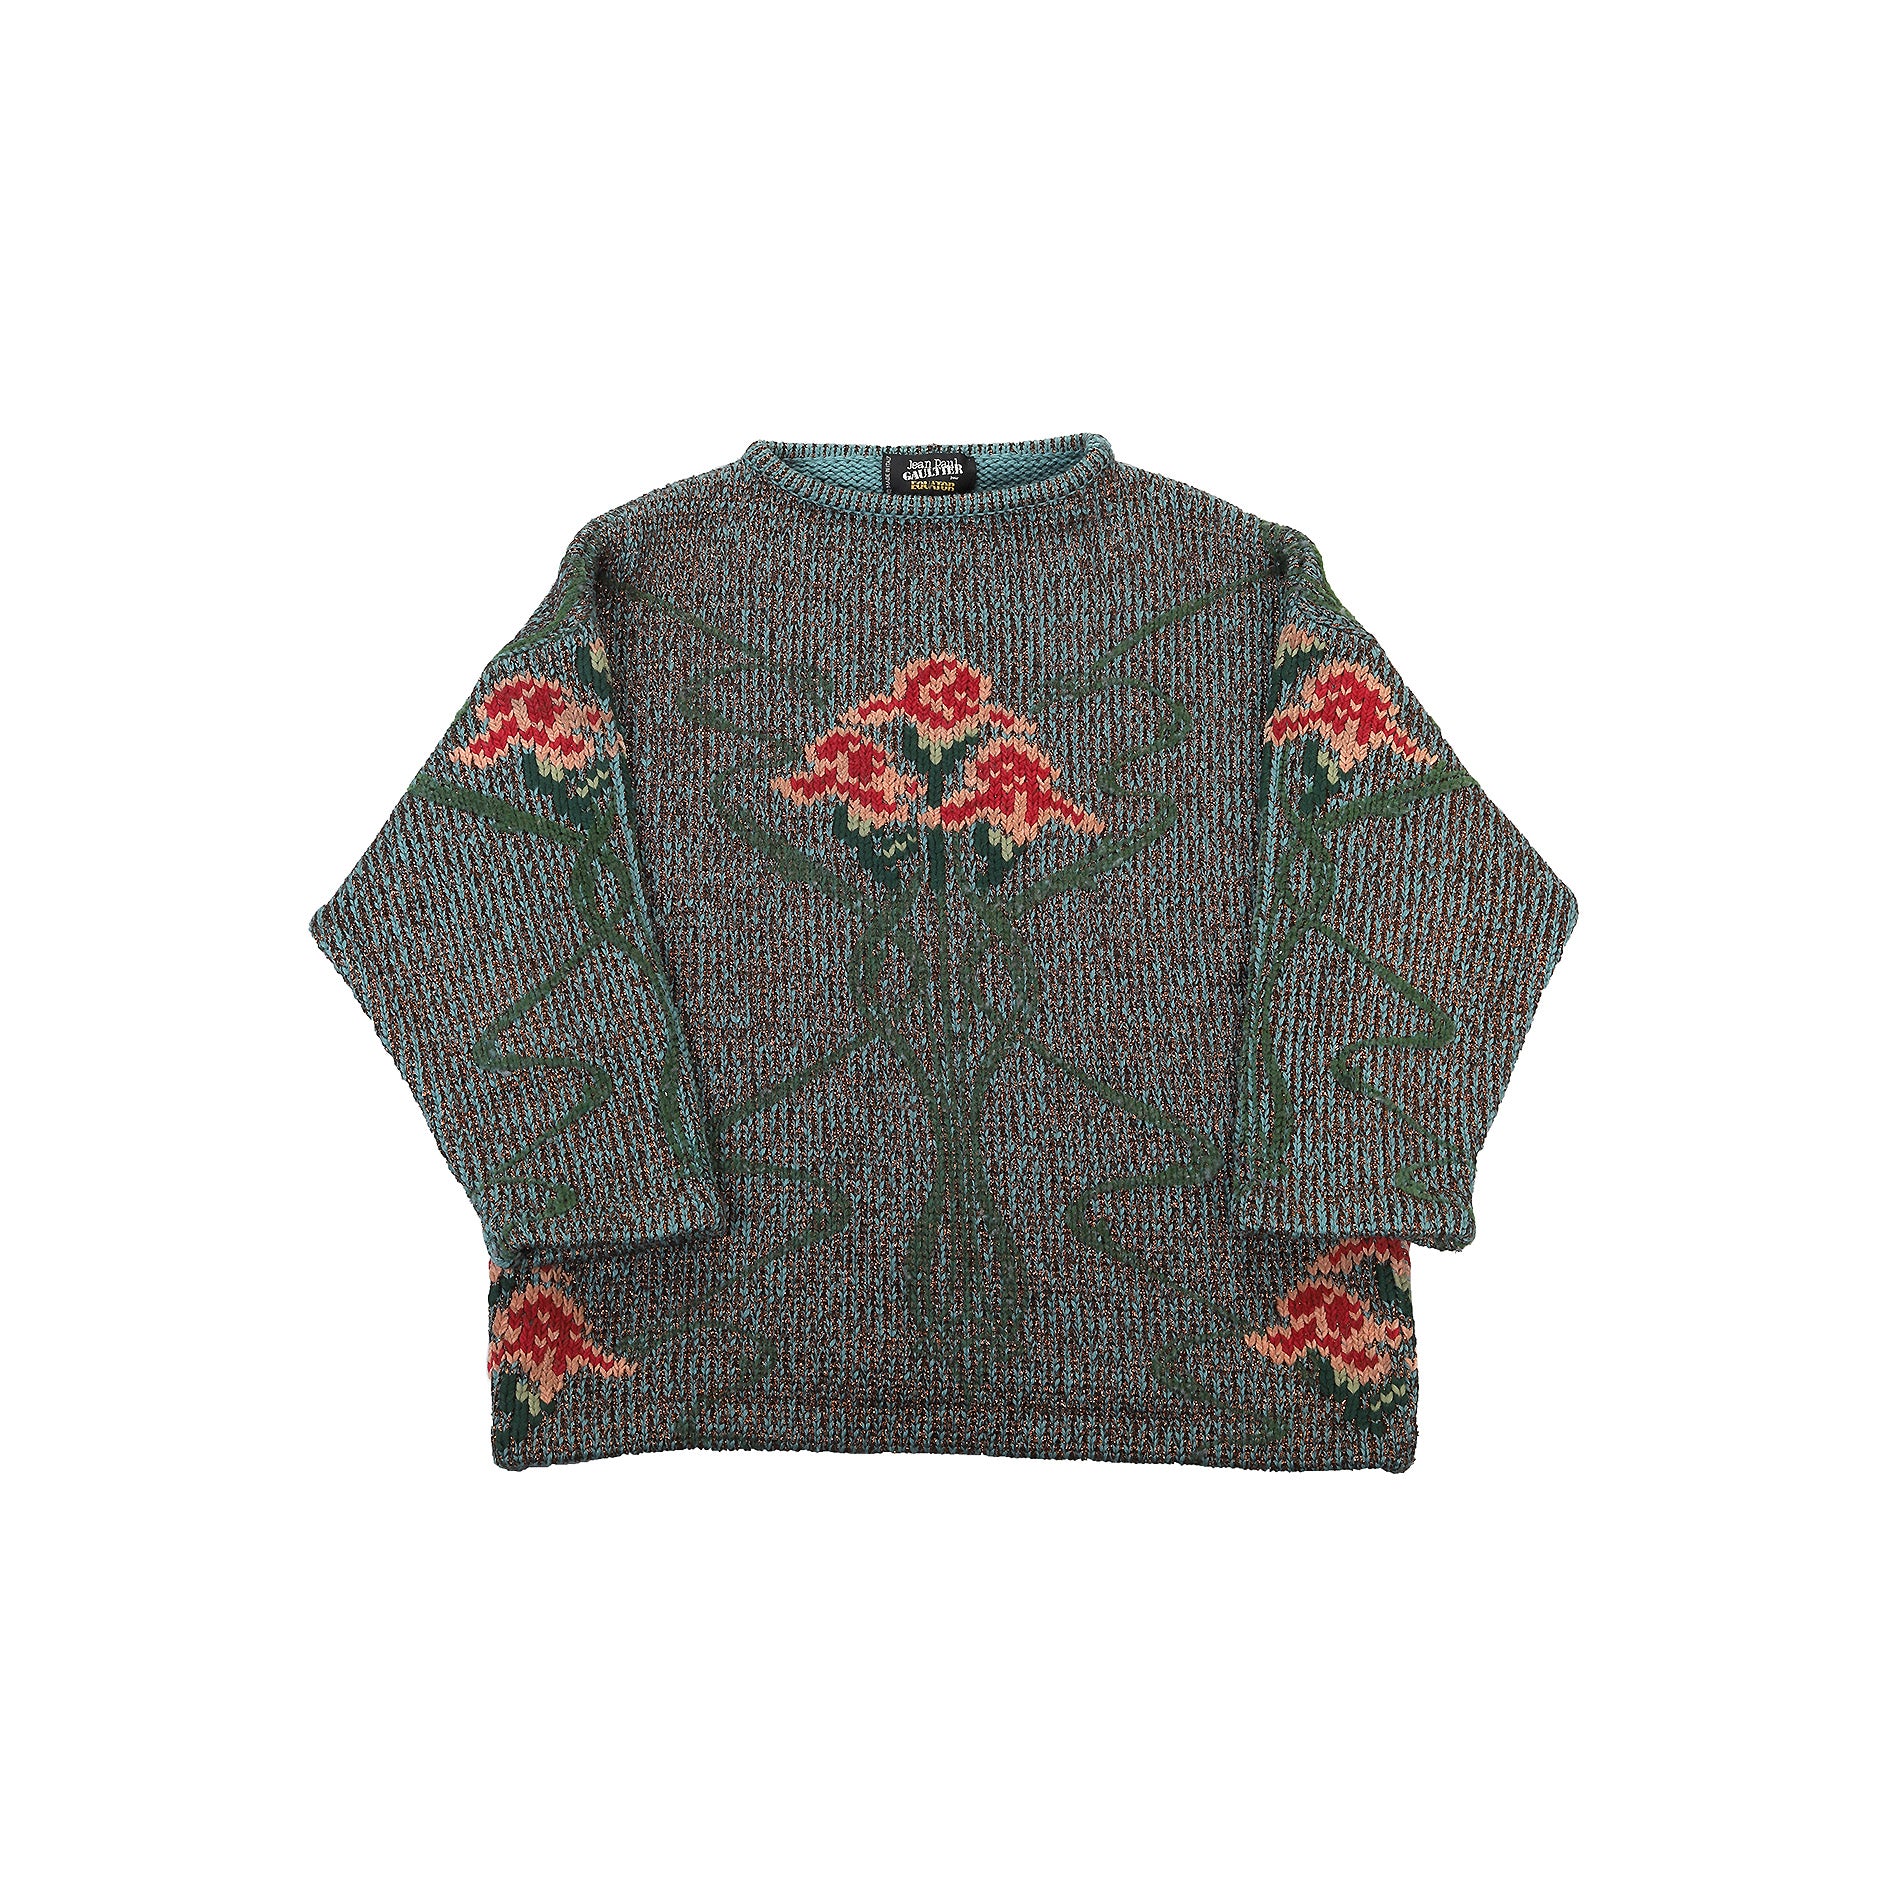 Jean Paul Gaultier FW84 Floral Lurex Knit Sweater